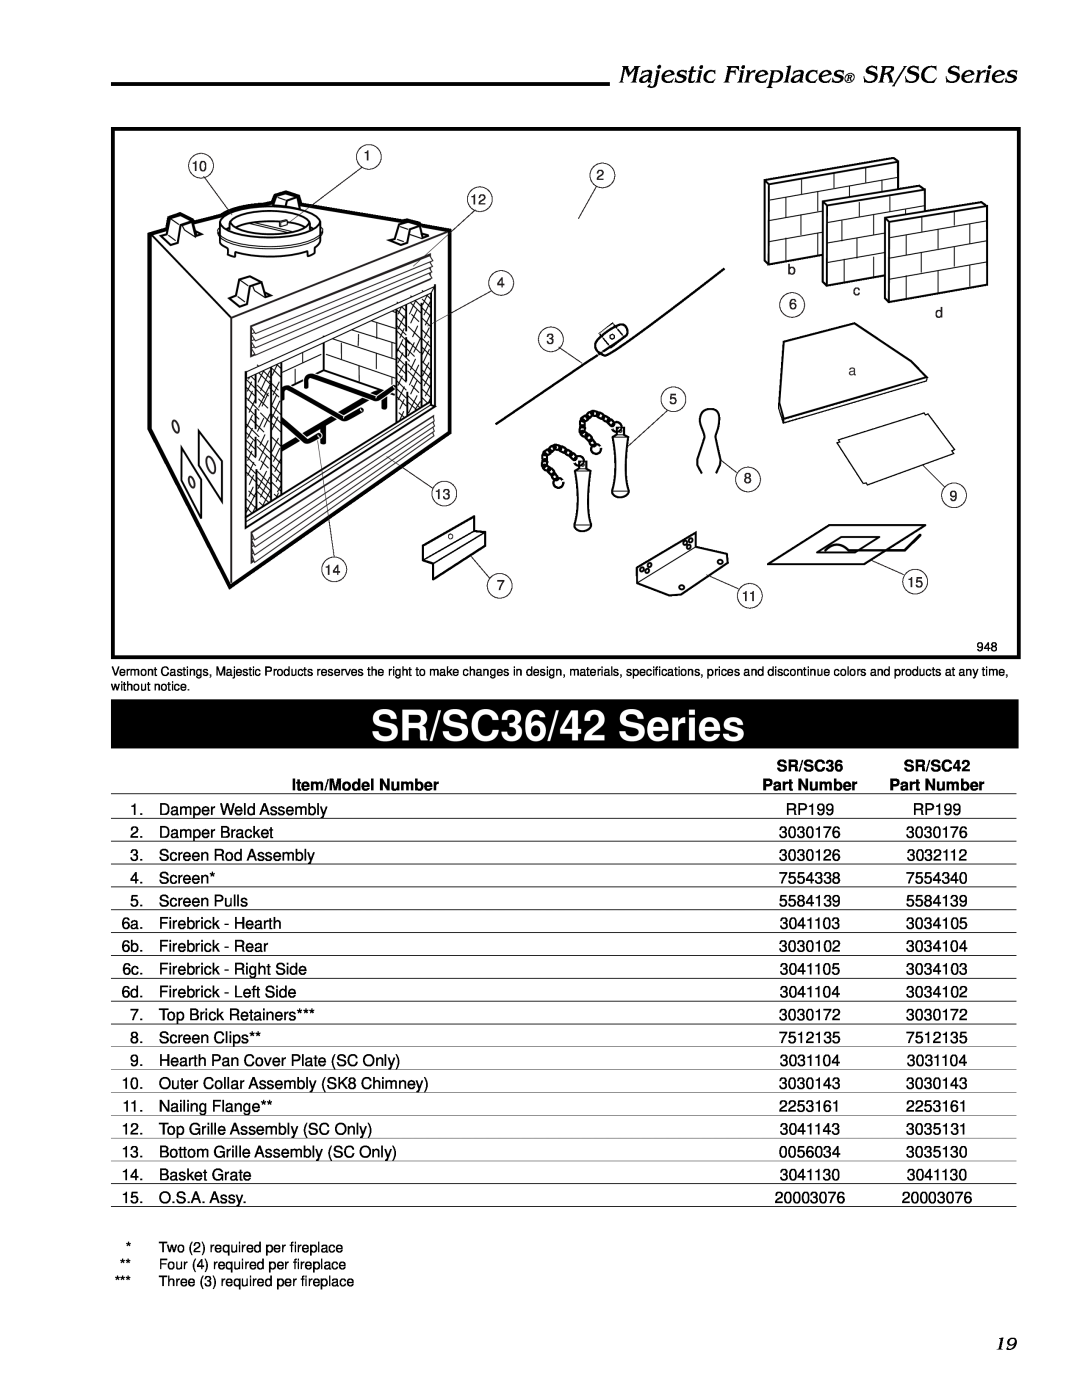 Vermont Casting SR42, SR36 SR/SC36/42 Series, Majestic Fireplaces SR/SC Series, SR/SC42, Item/Model Number, Part Number 